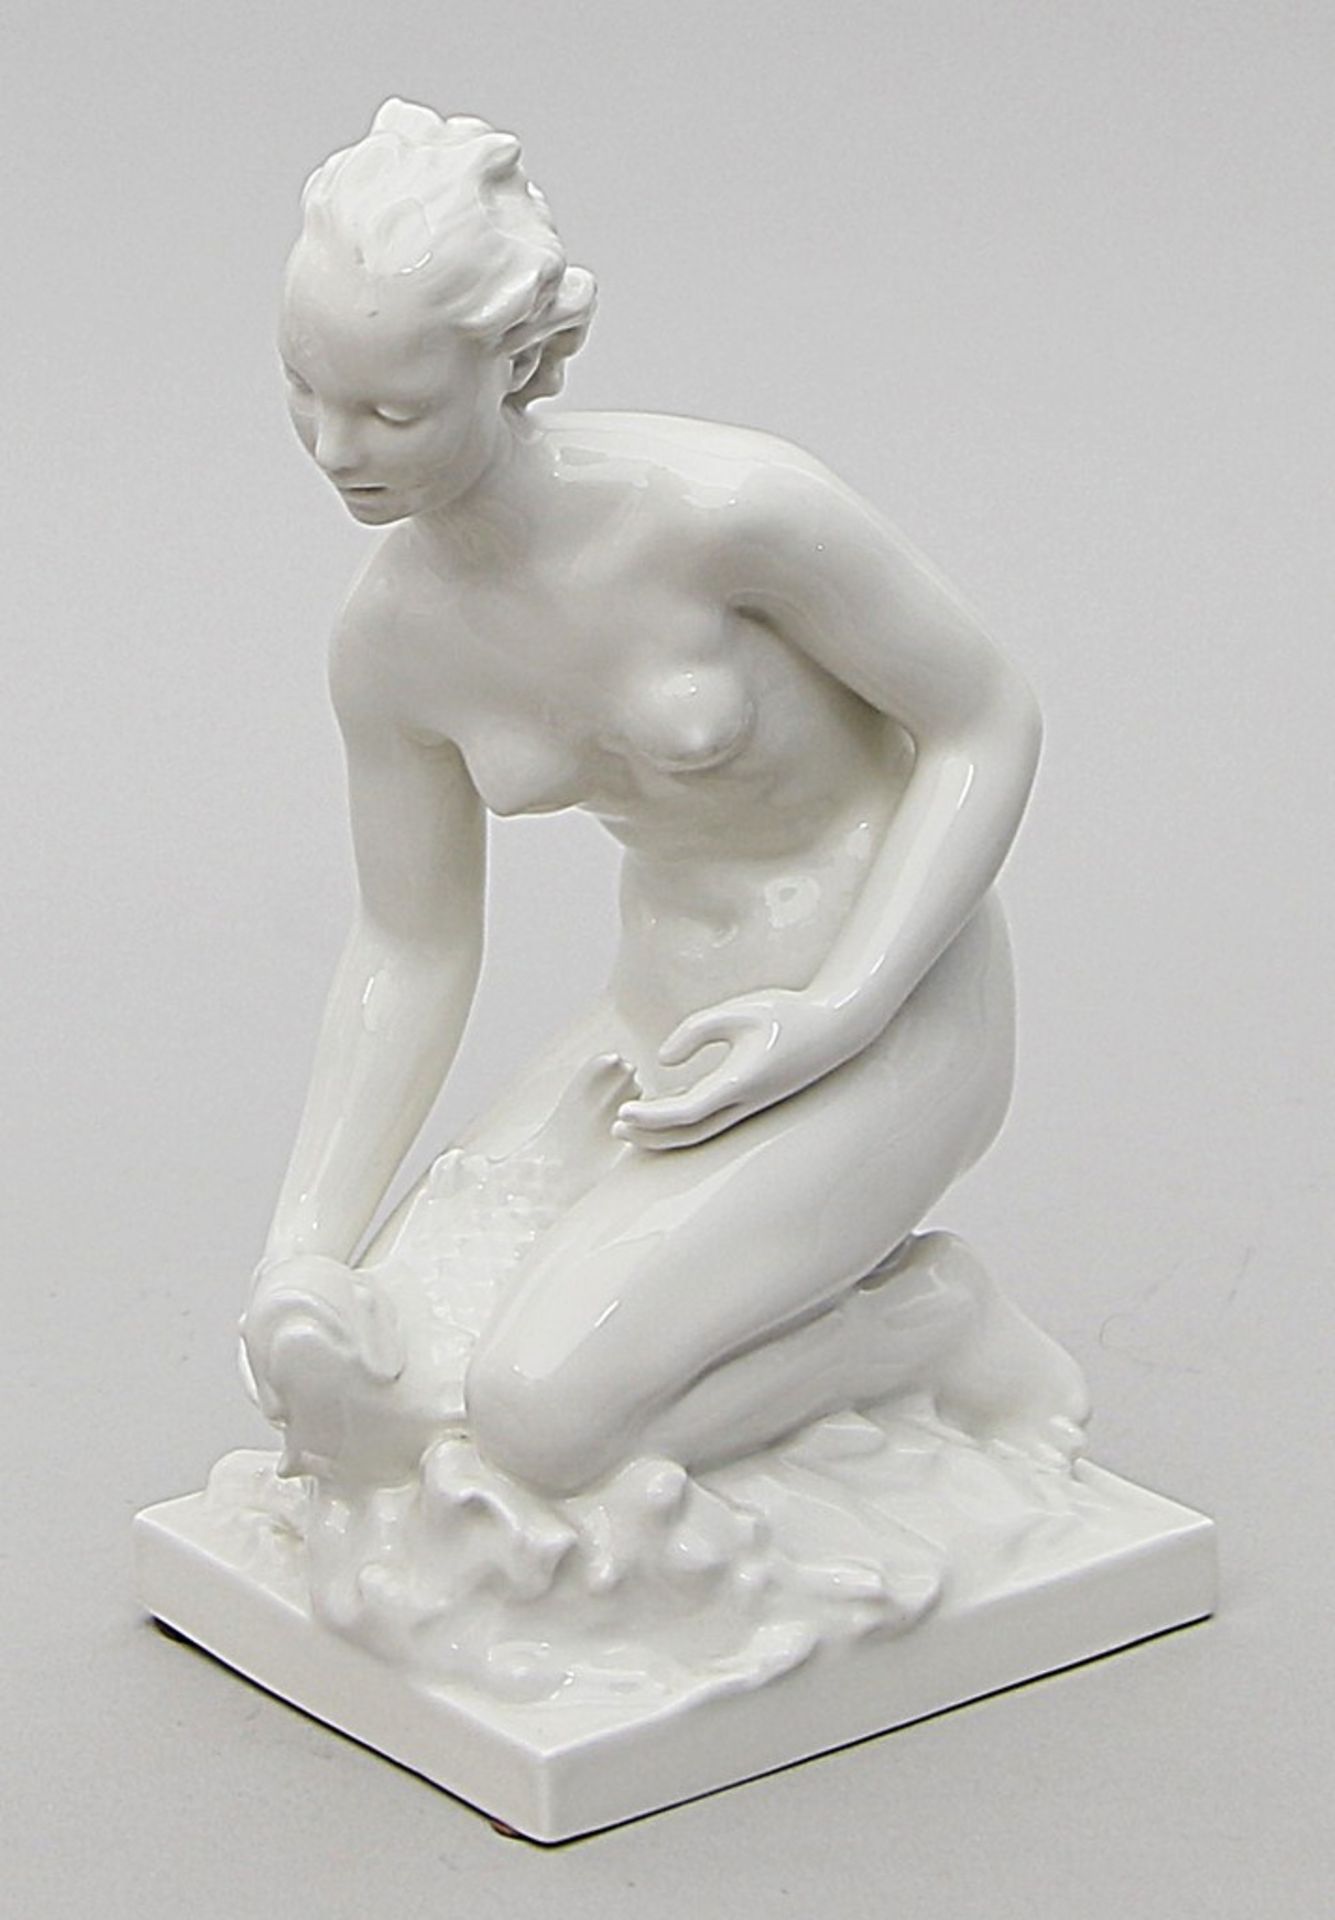 Skulptur "Mädchenakt mit Fisch", KPM Berlin. Weiß. Nach einem Entwurf Suse Müller-D